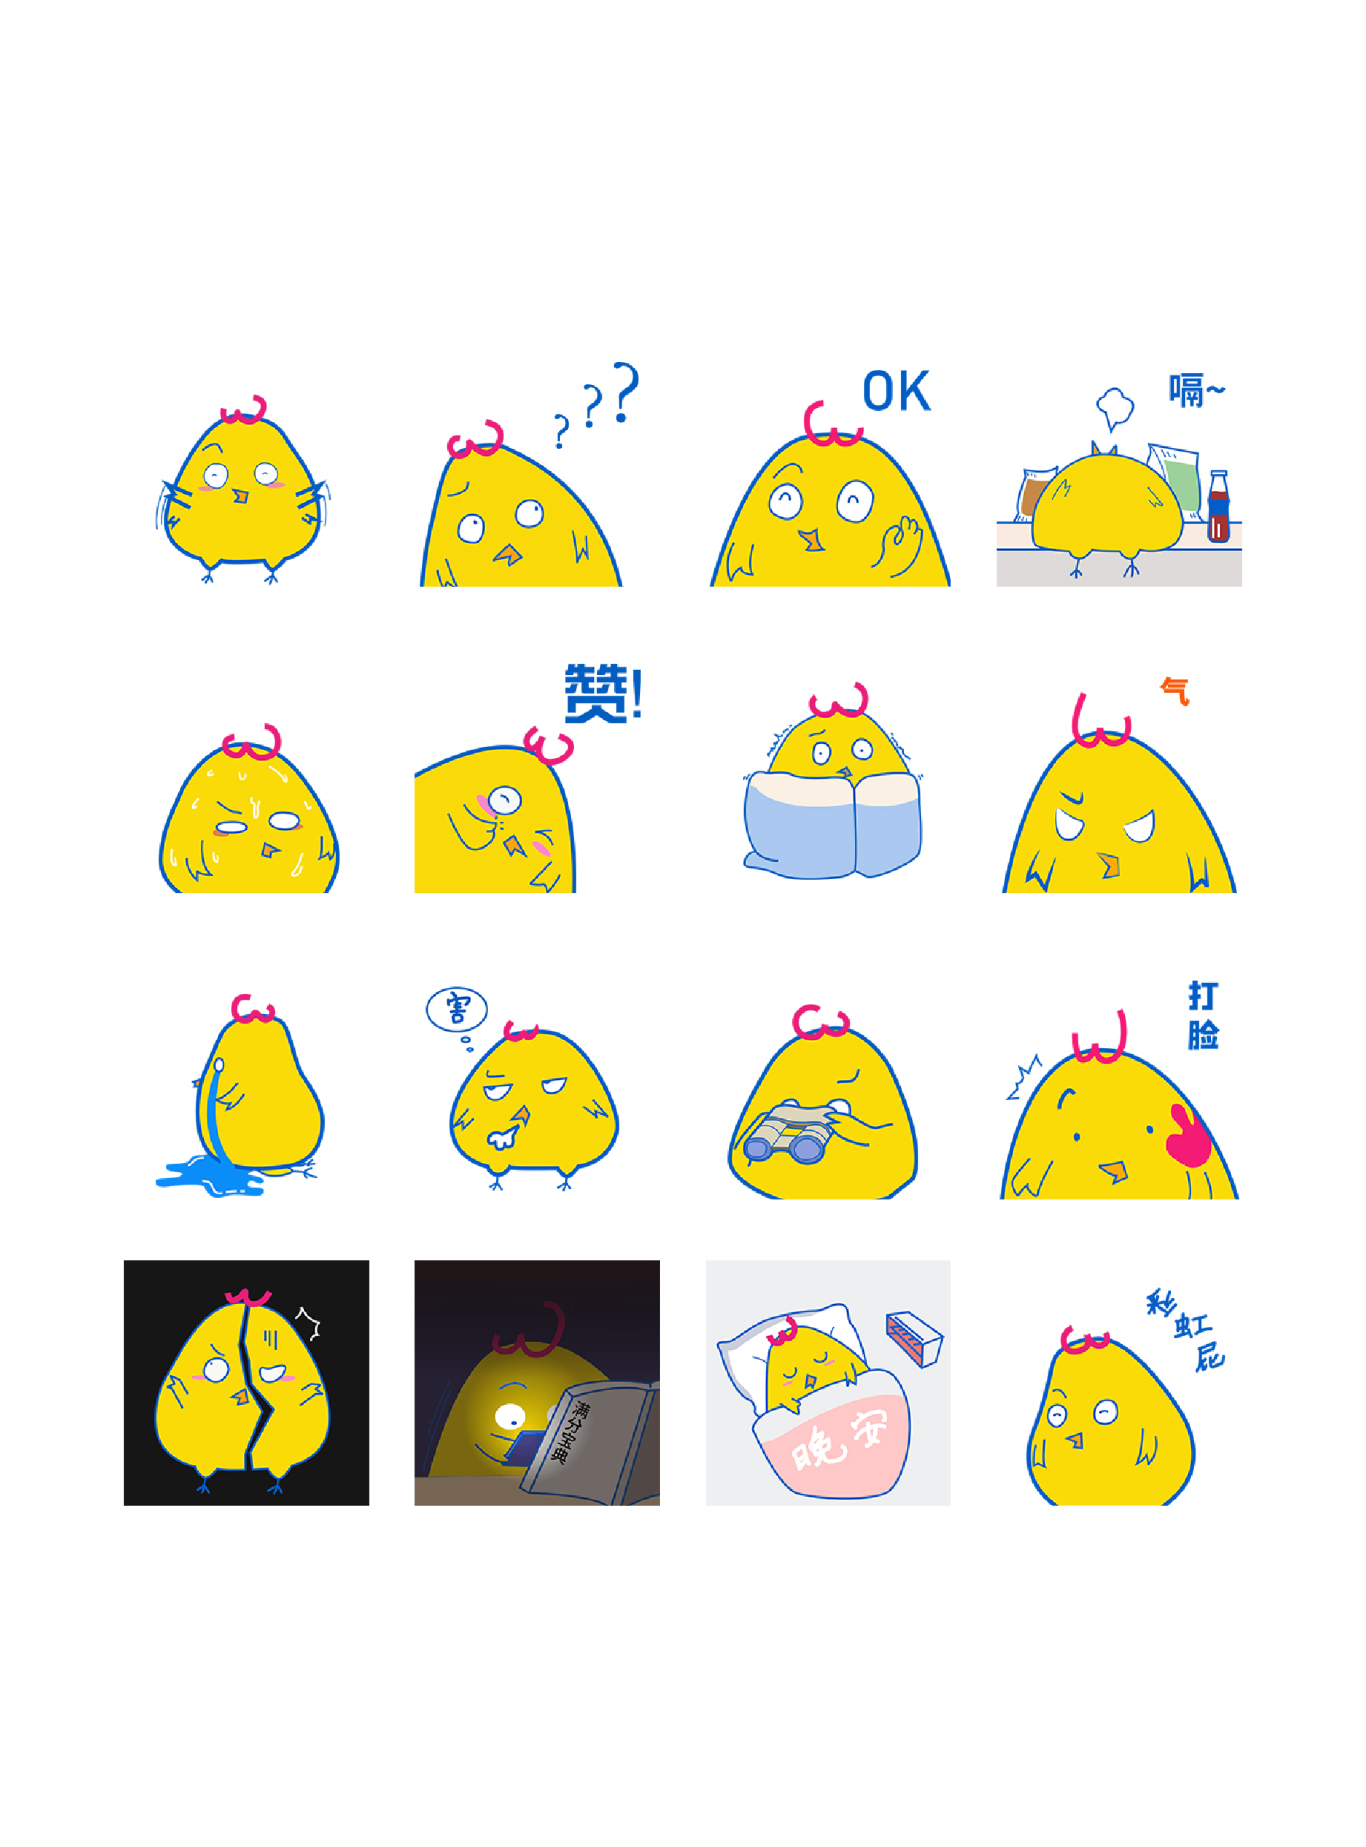 肥肥小黄鸡-微信动态表情包图0